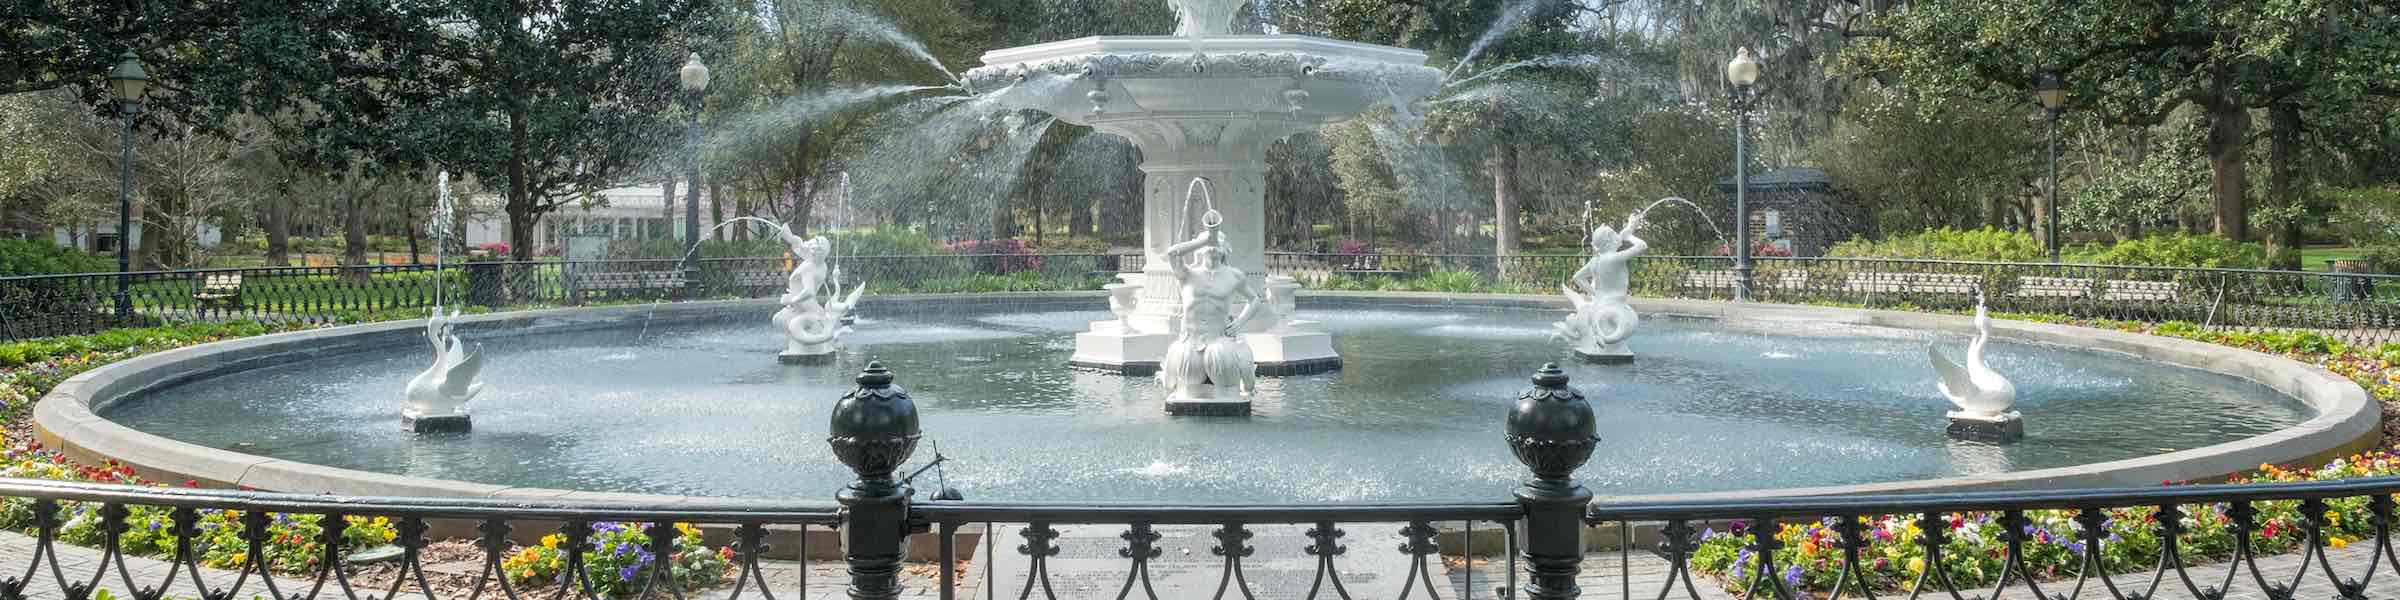 The historic 1850s fountain in Forsyth Park, Savannah, GA.